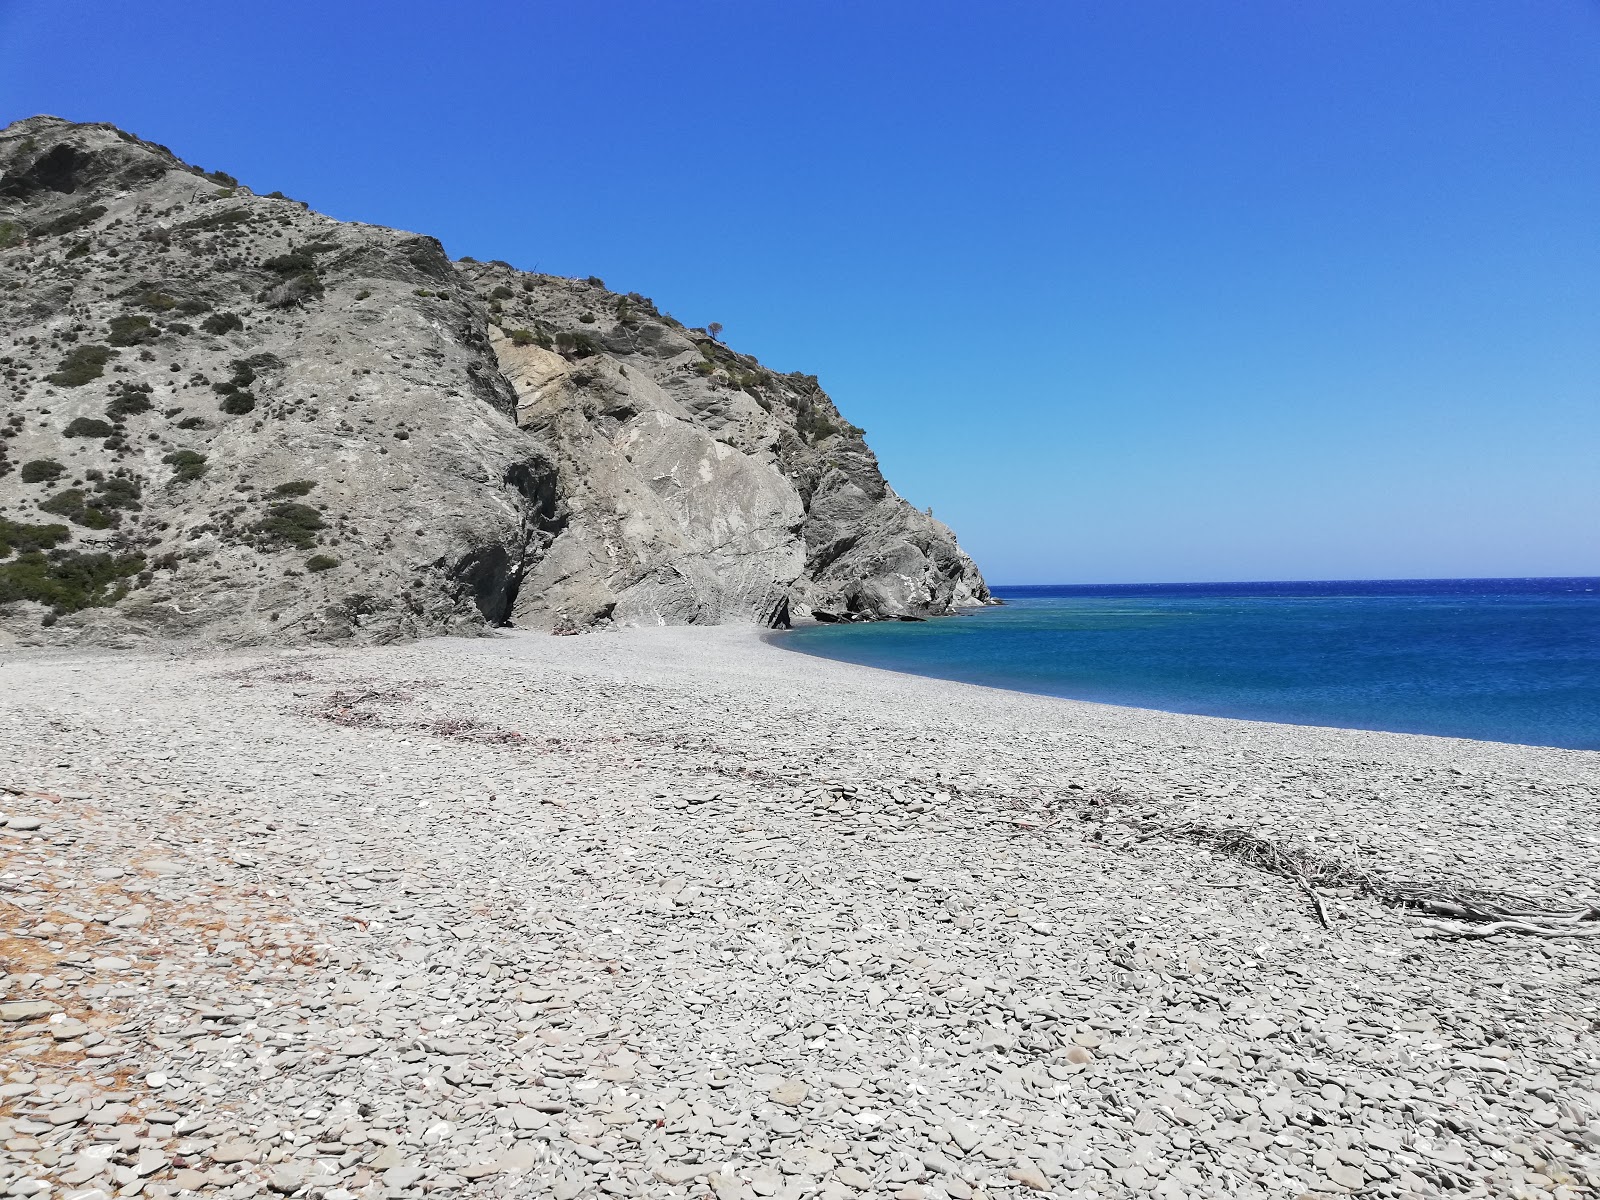 Agnotia beach'in fotoğrafı doğal alan içinde bulunmaktadır